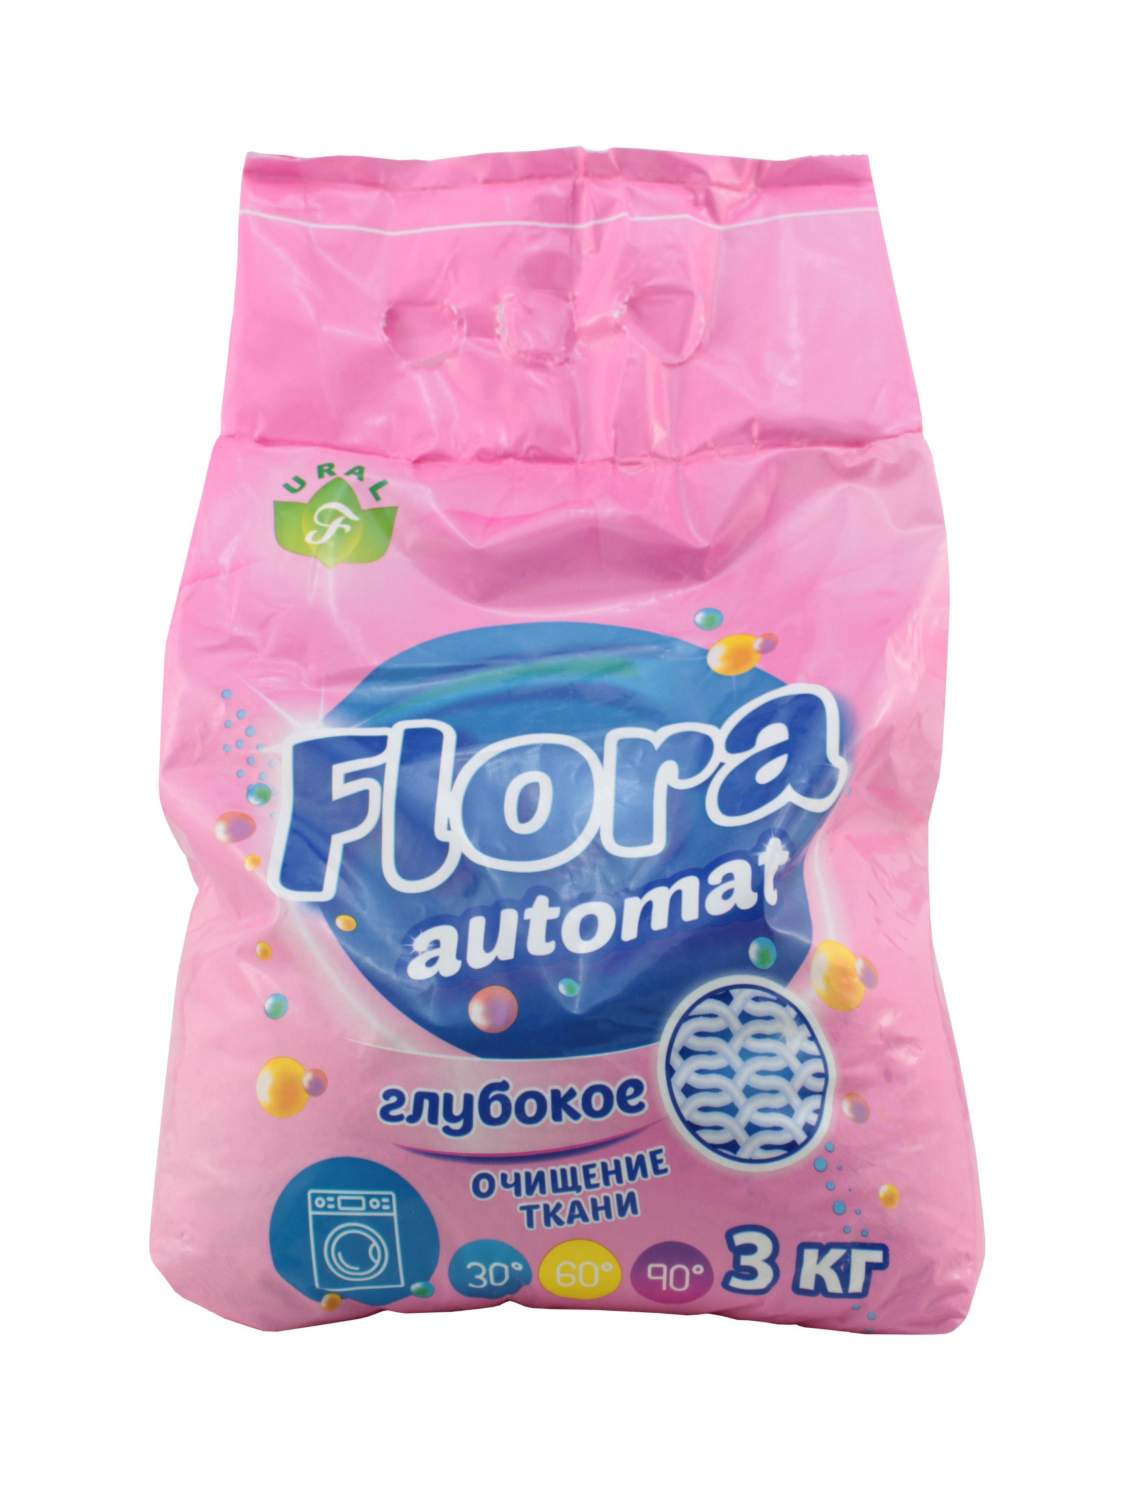 Стиральный порошок Flora Автомат 3 кг - отзывы покупателей на Мегамаркет